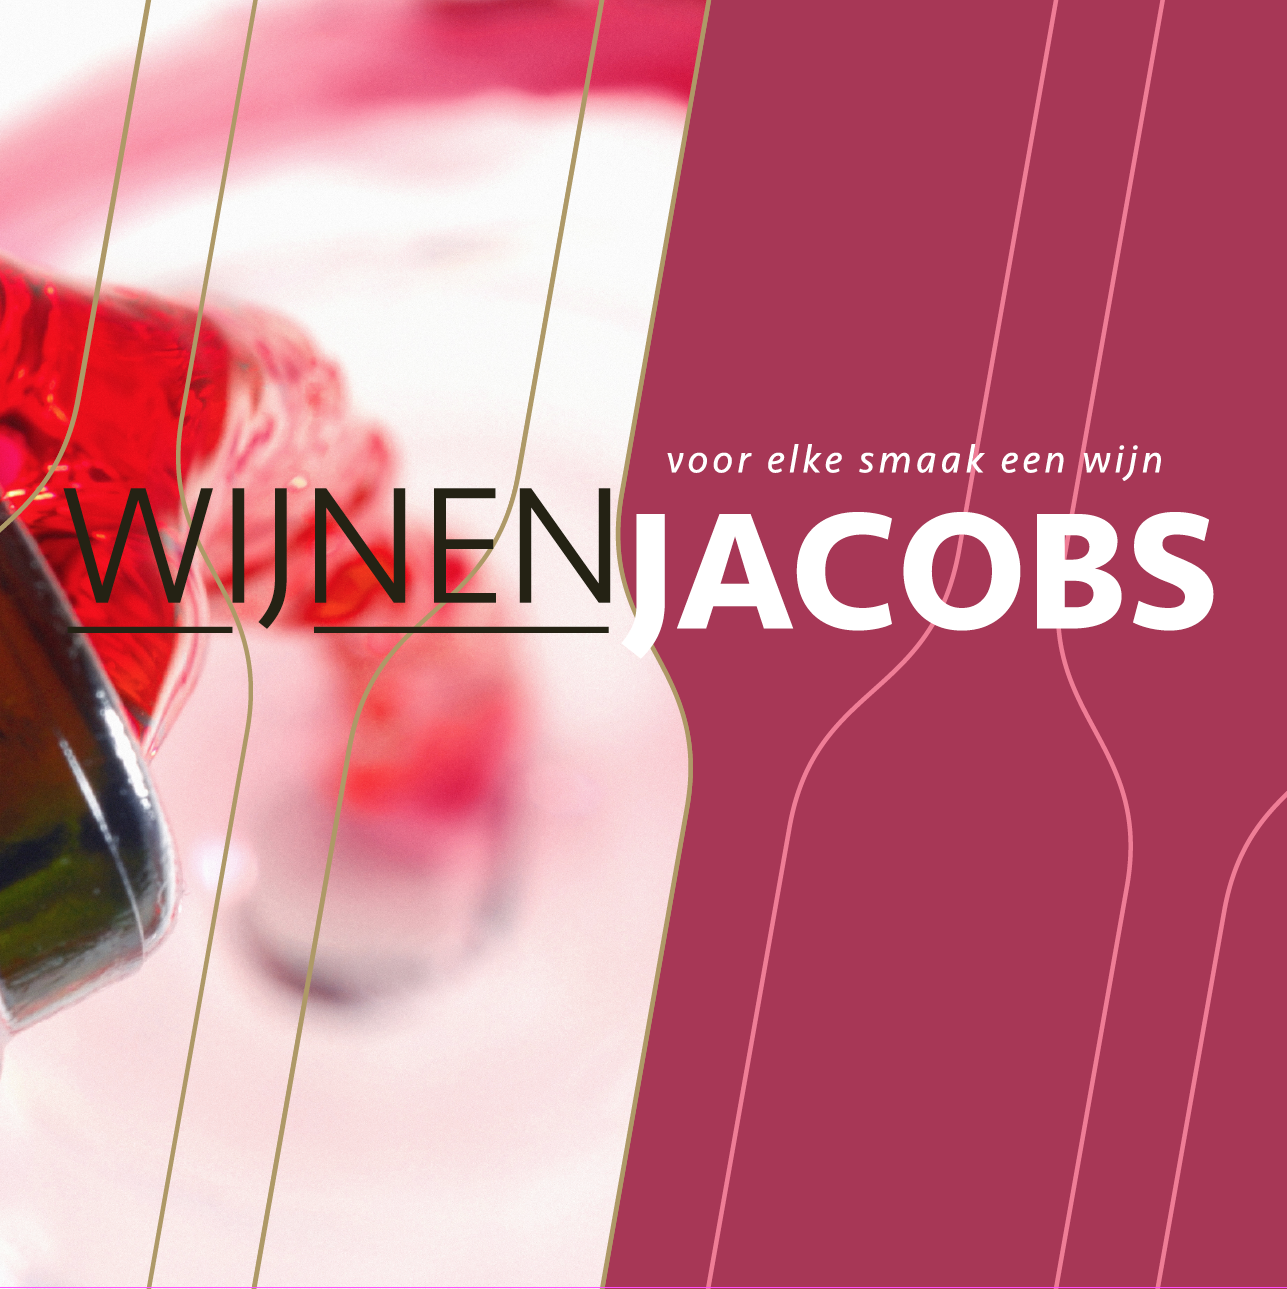 Wijnen Jacobs